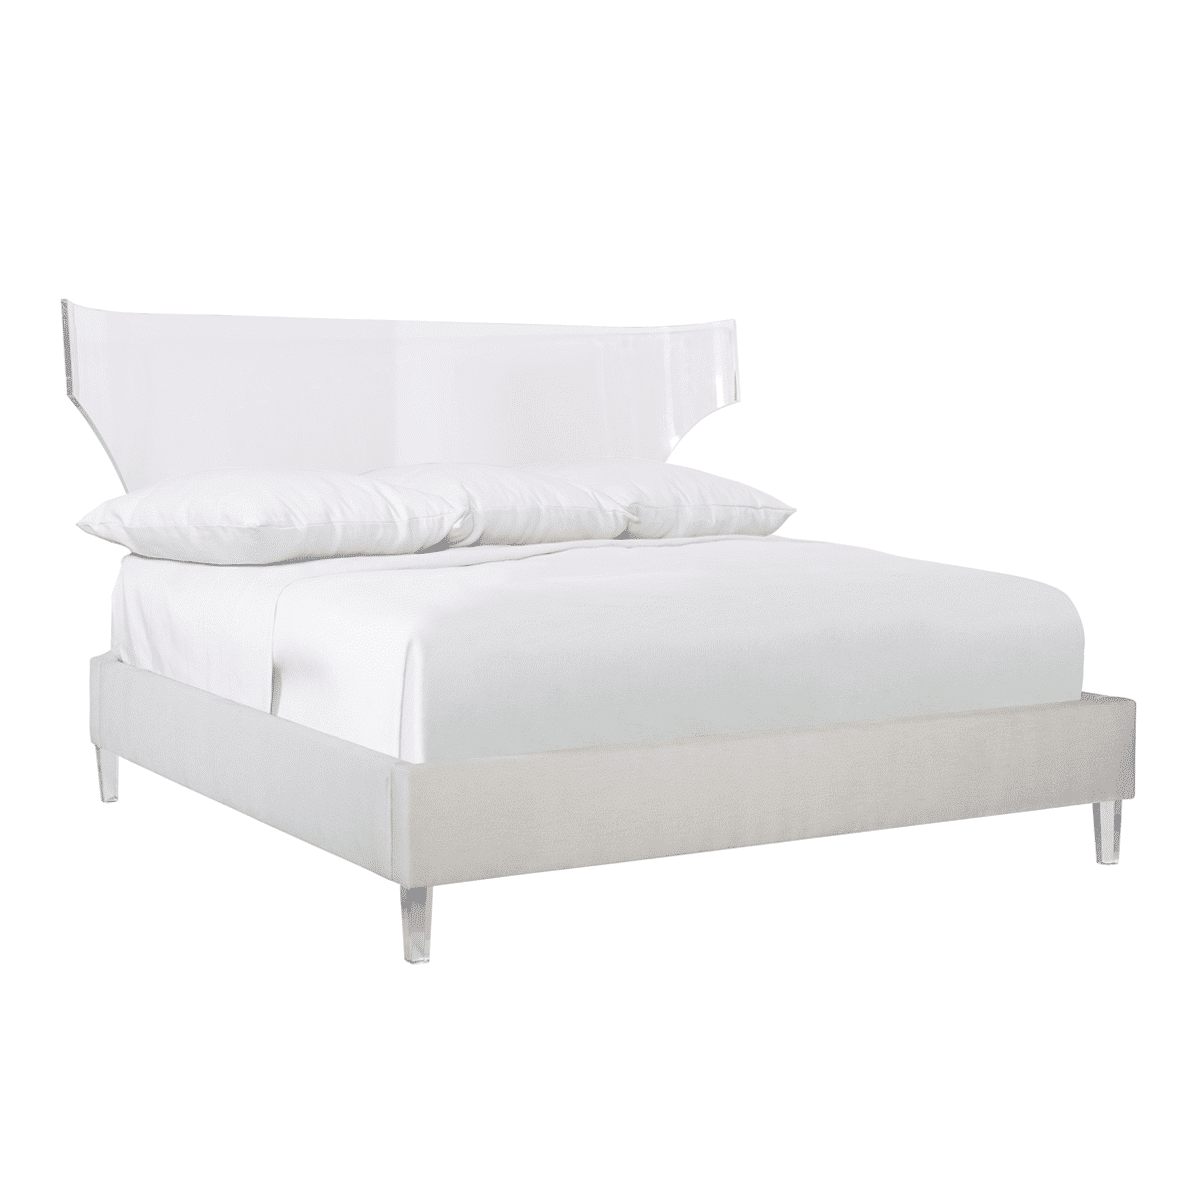 Estella Acrylic Bed Modern Sense, Acrylic Bed Frame